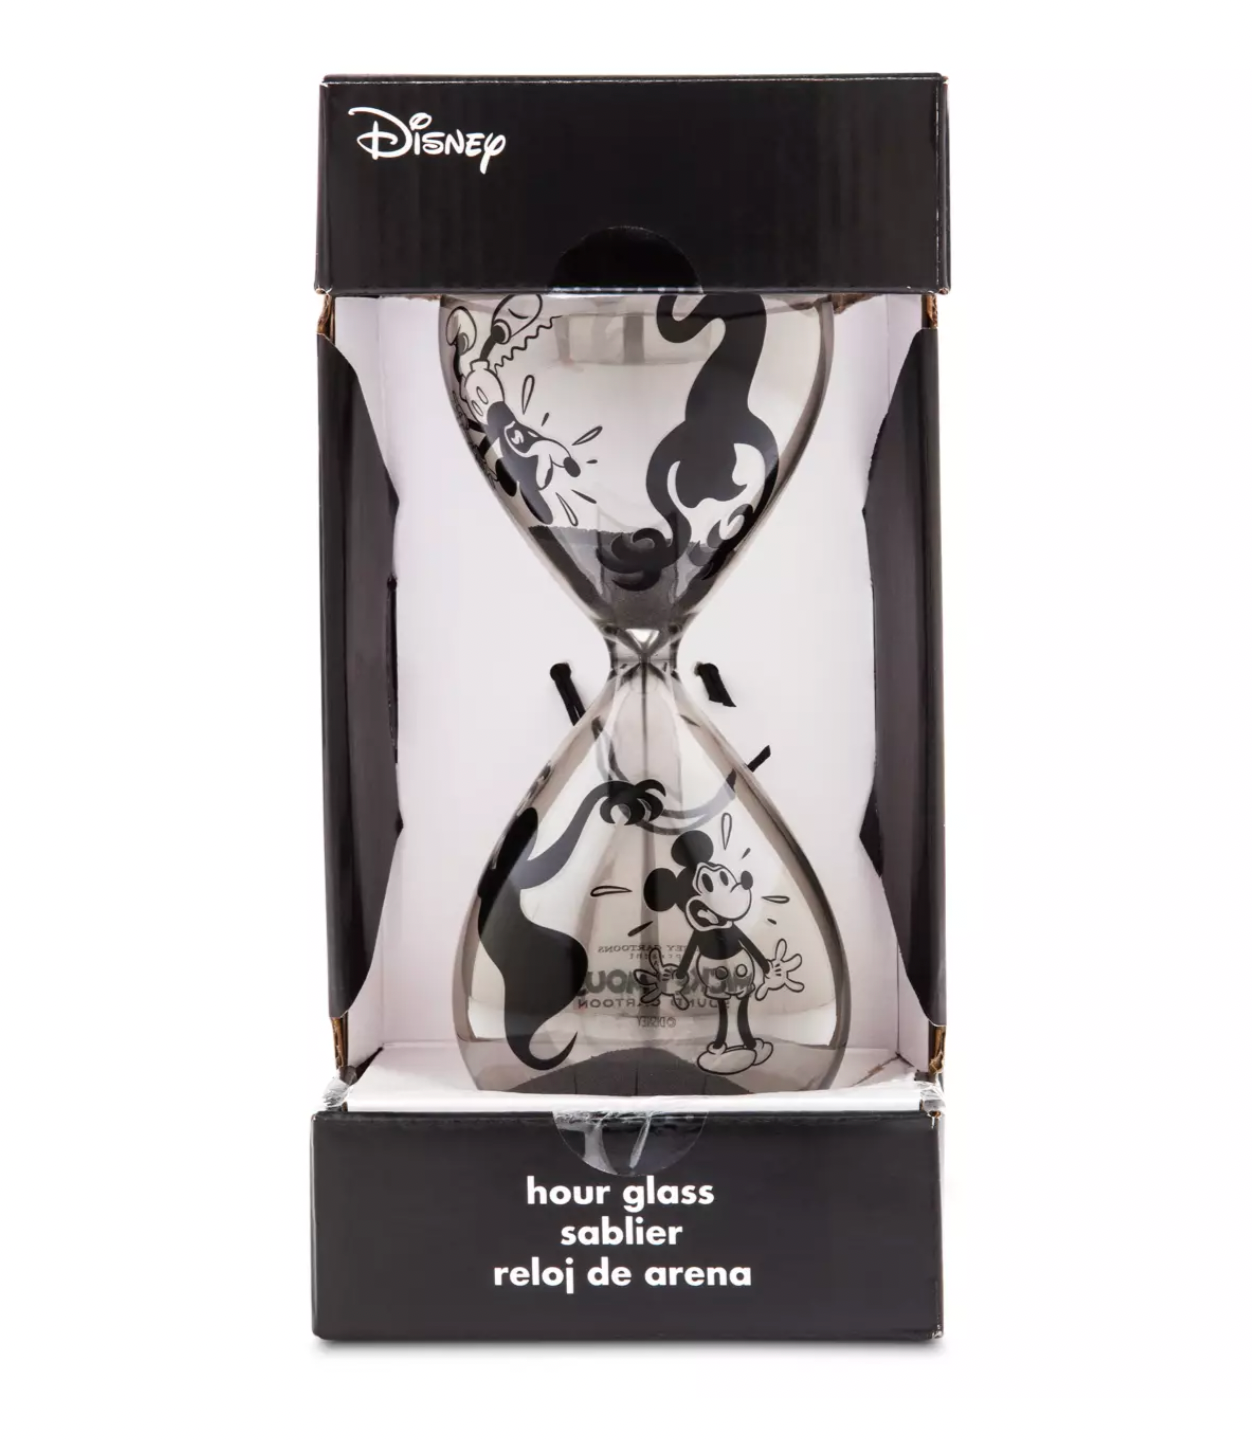 Disney Halloween Mickey Sound Cartoon Hour Glass New with Box